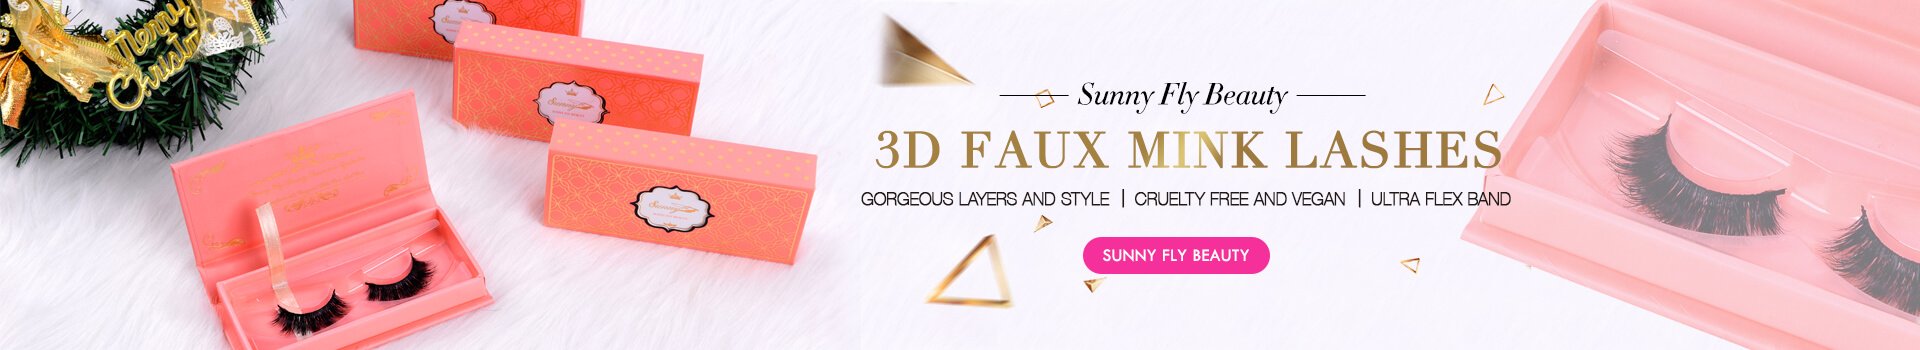 3D Faux Mink Lashes SD51